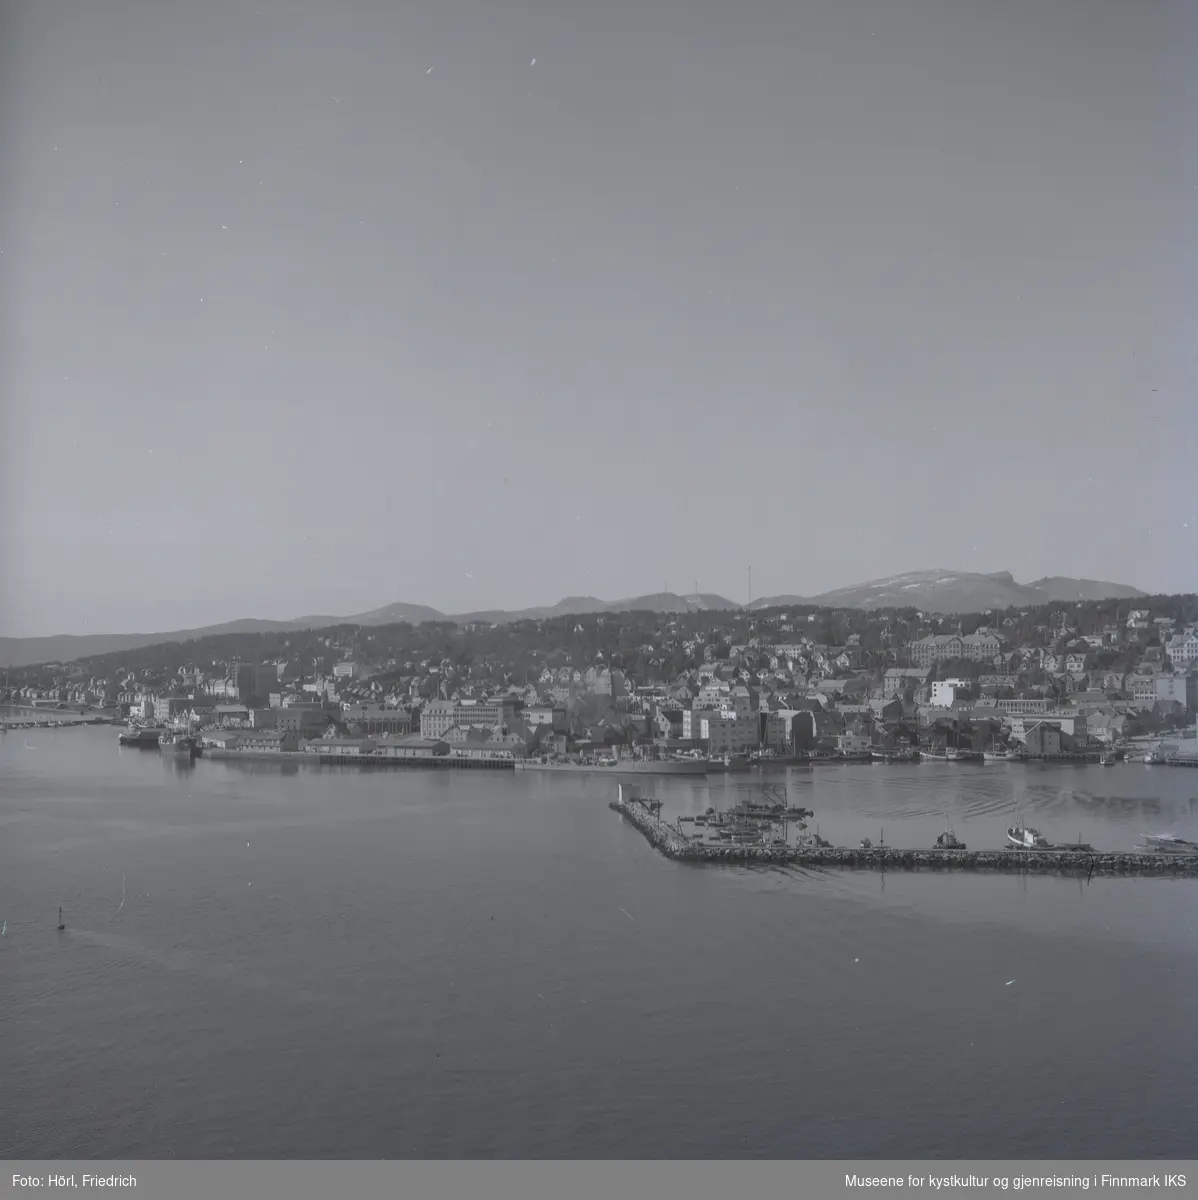 Utsikt over Tromsøs havn fotografert fra brua over Tromsøysundet. I havna ligger båter og man kan godt se bebyggelsen i byen.